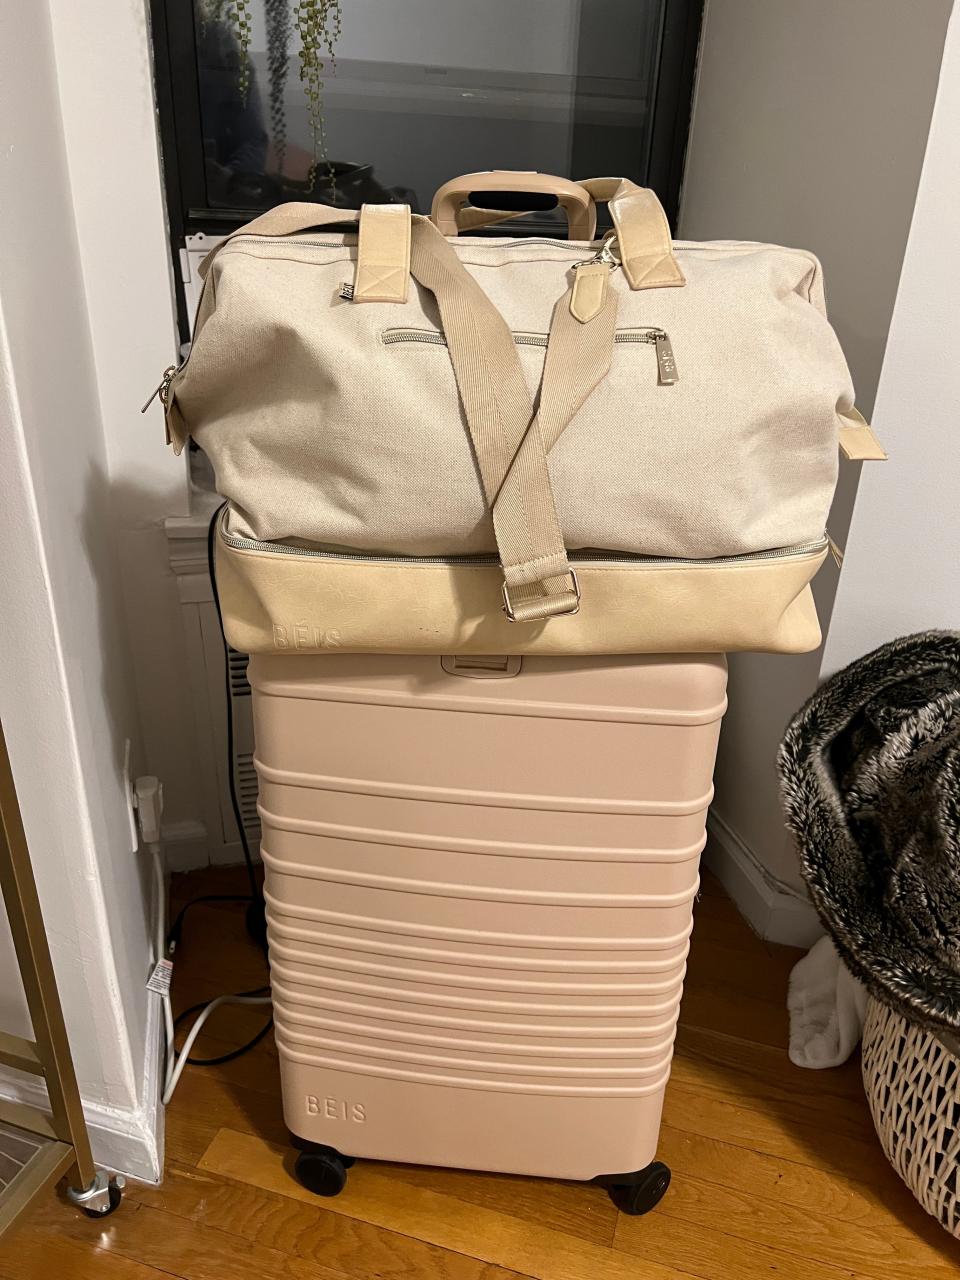 my beis weekender bag and suitcase